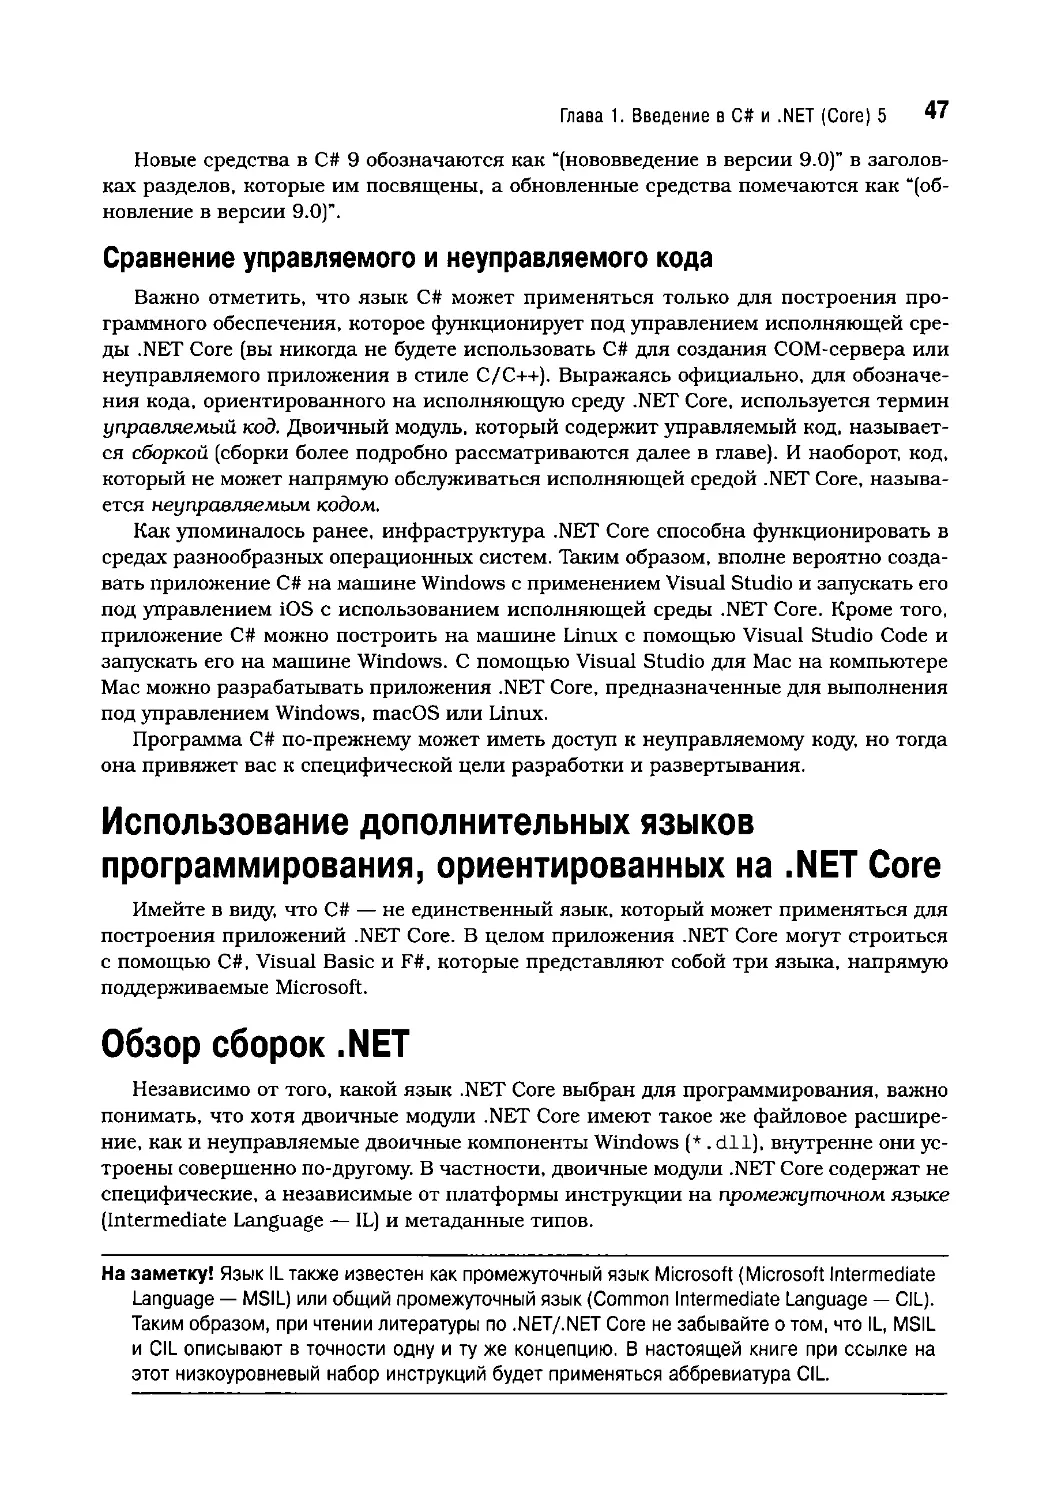 Сравнение управляемого и неуправляемого кода
Использование дополнительных языков программирования, ориентированных на .NET Core
Обзор сборок .NET